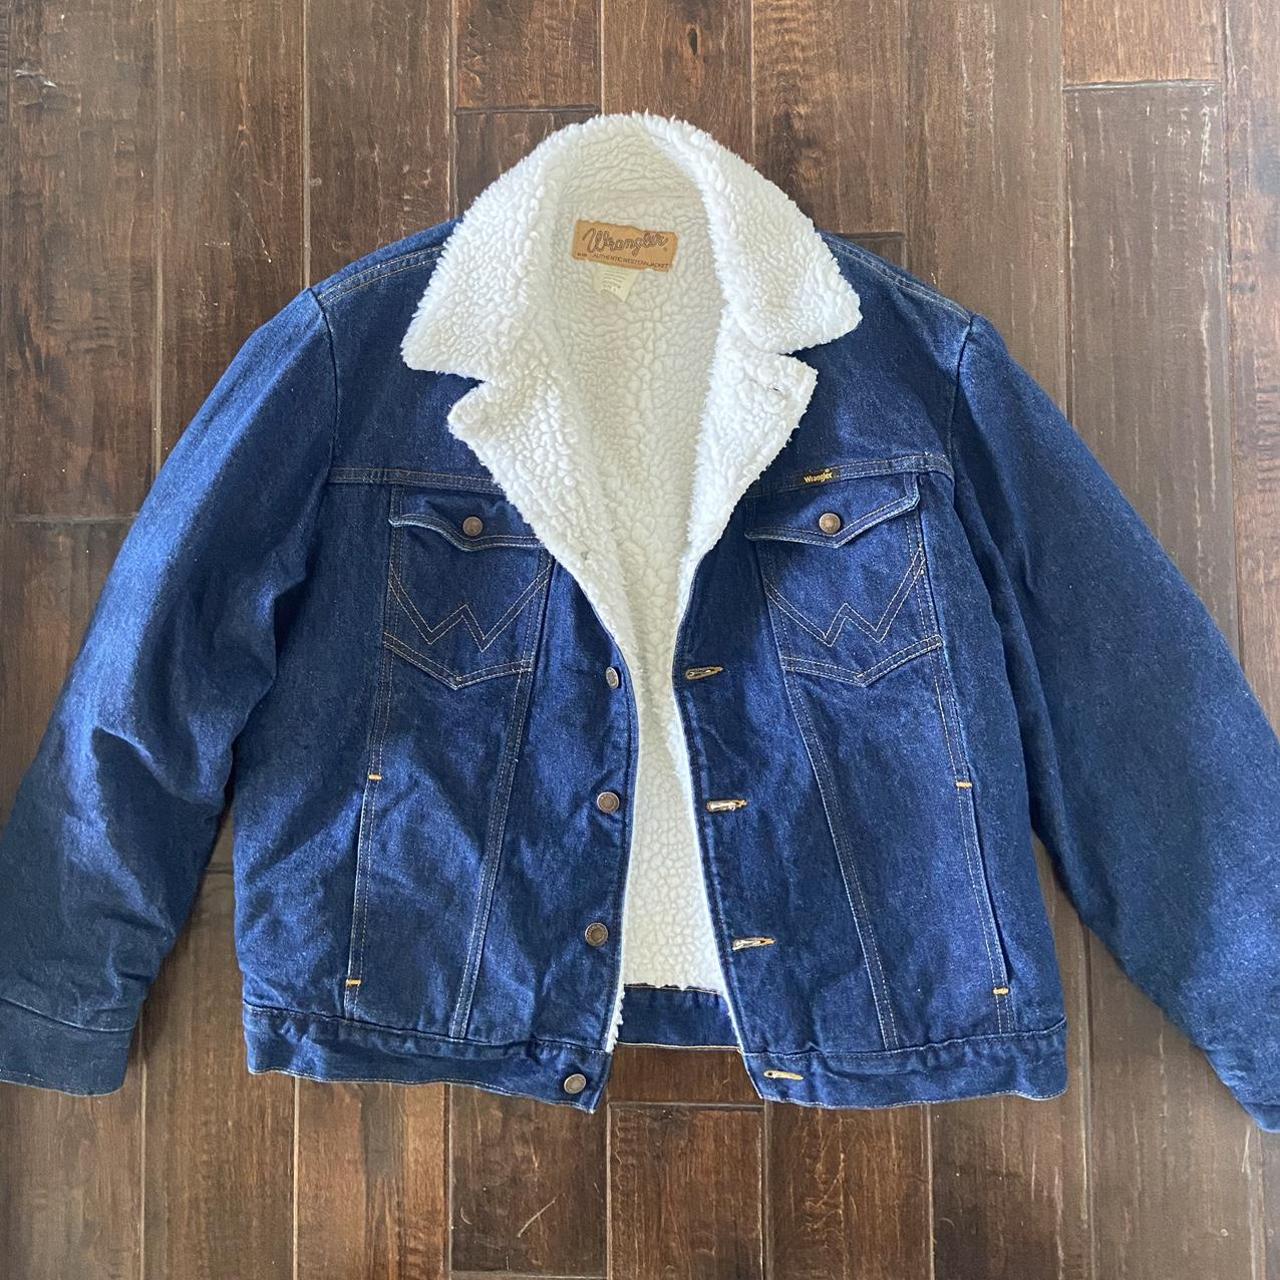 Wrangler trucker jacket large vintage - Depop